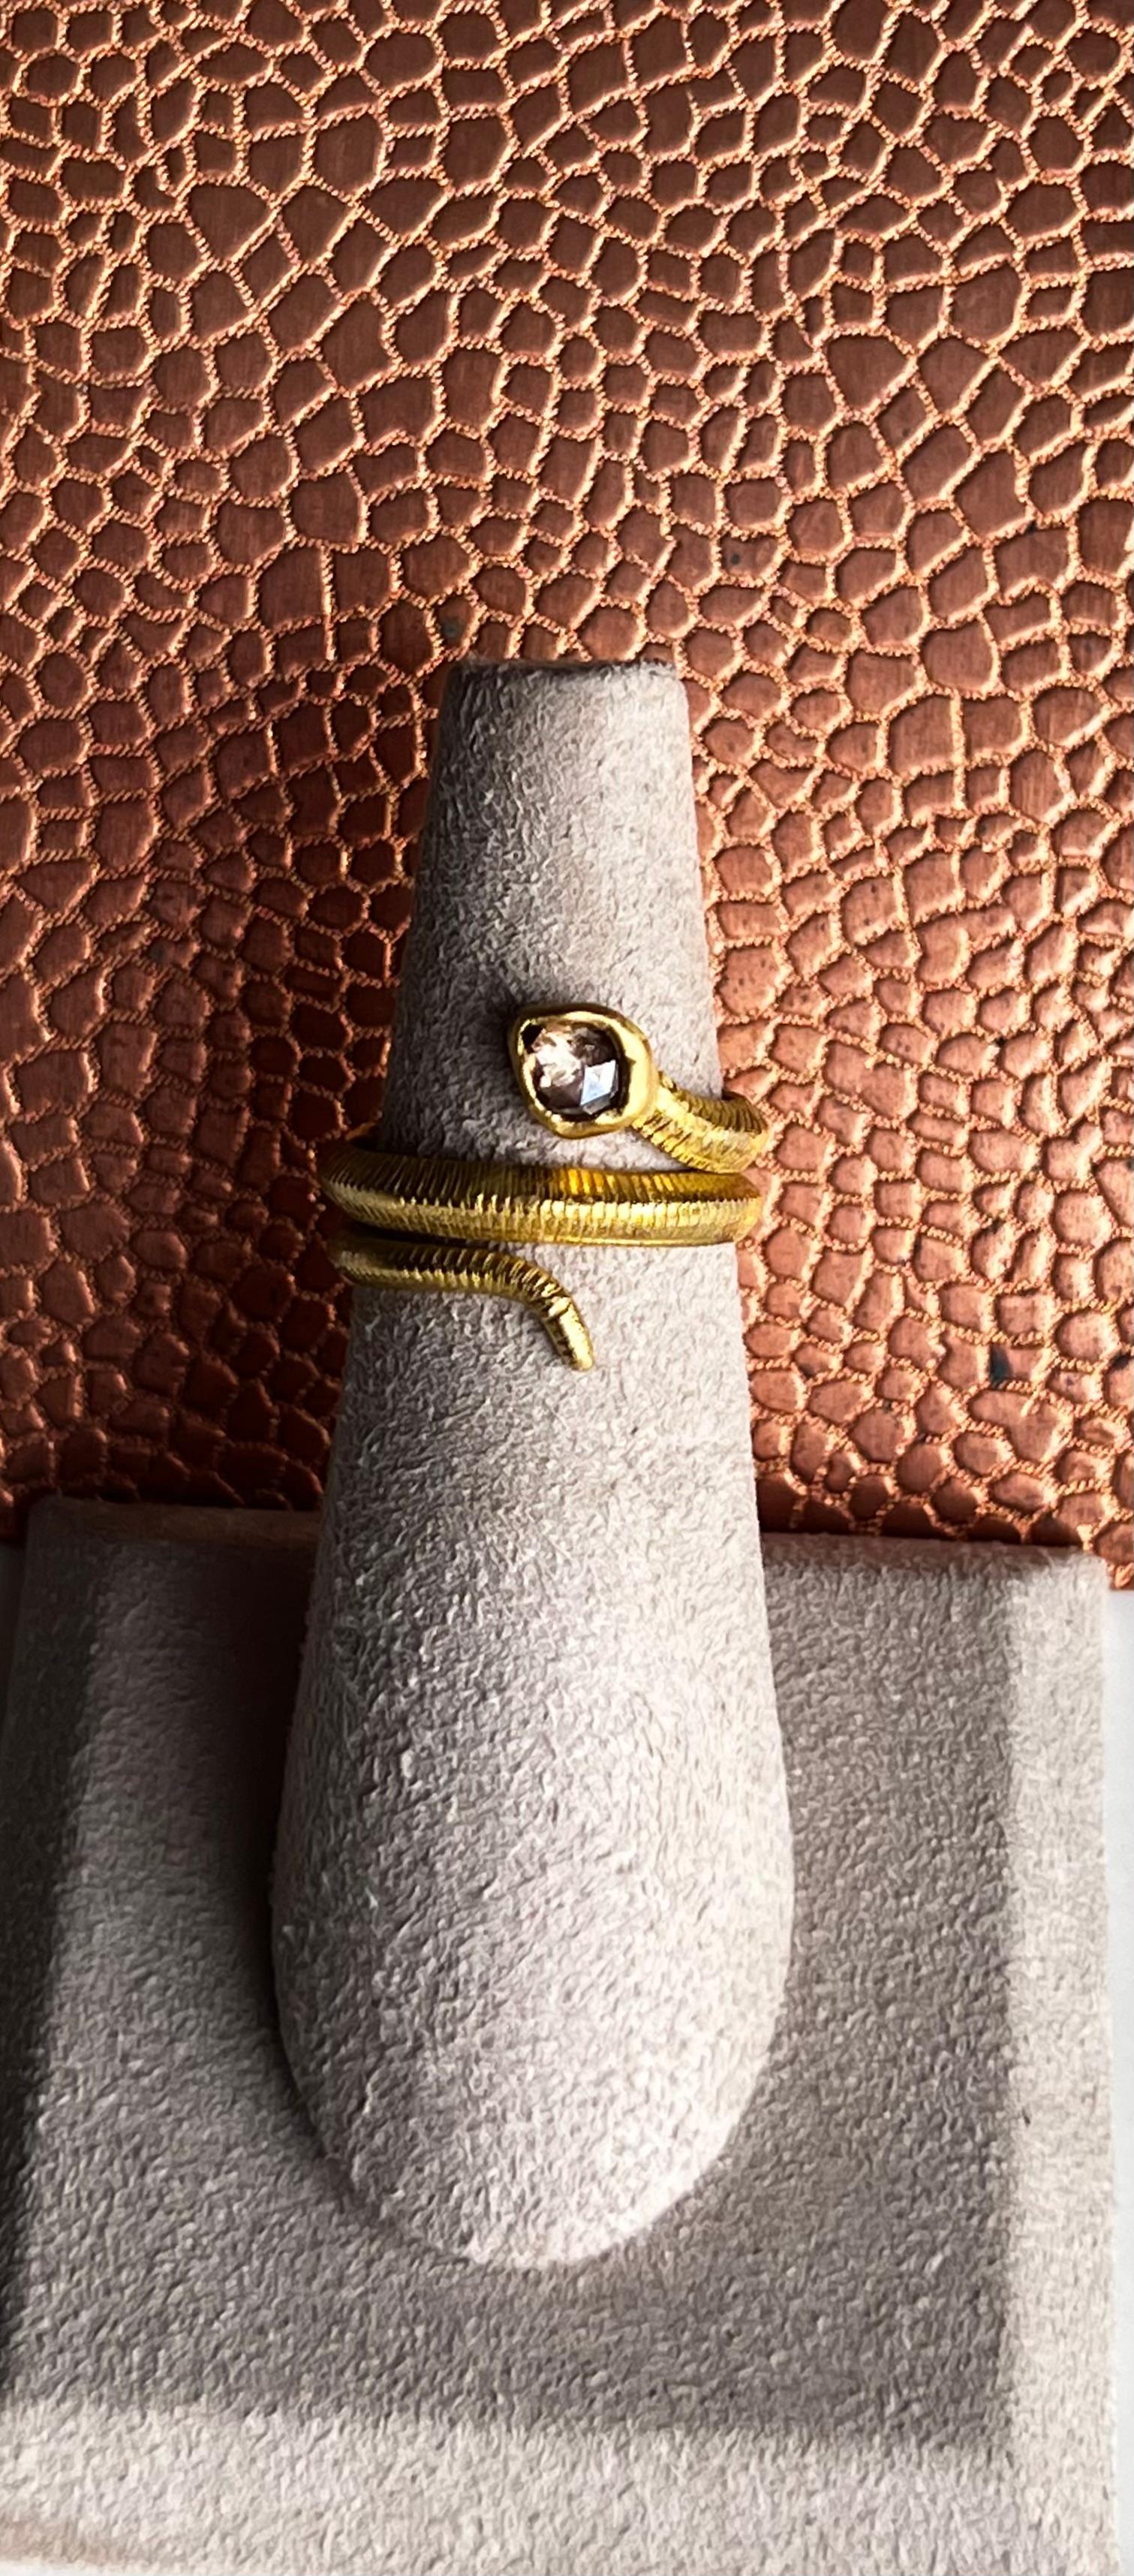 Dieser Ring ist komplett handgefertigt, mit einem cognacfarbenen Diamanten anstelle des Schlangenkopfes und einer eingravierten Textur für die Schuppen. Die satte gelbe Farbe des 20-karätigen Goldes verstärkt den Kontrast mit dem cognacfarbenen